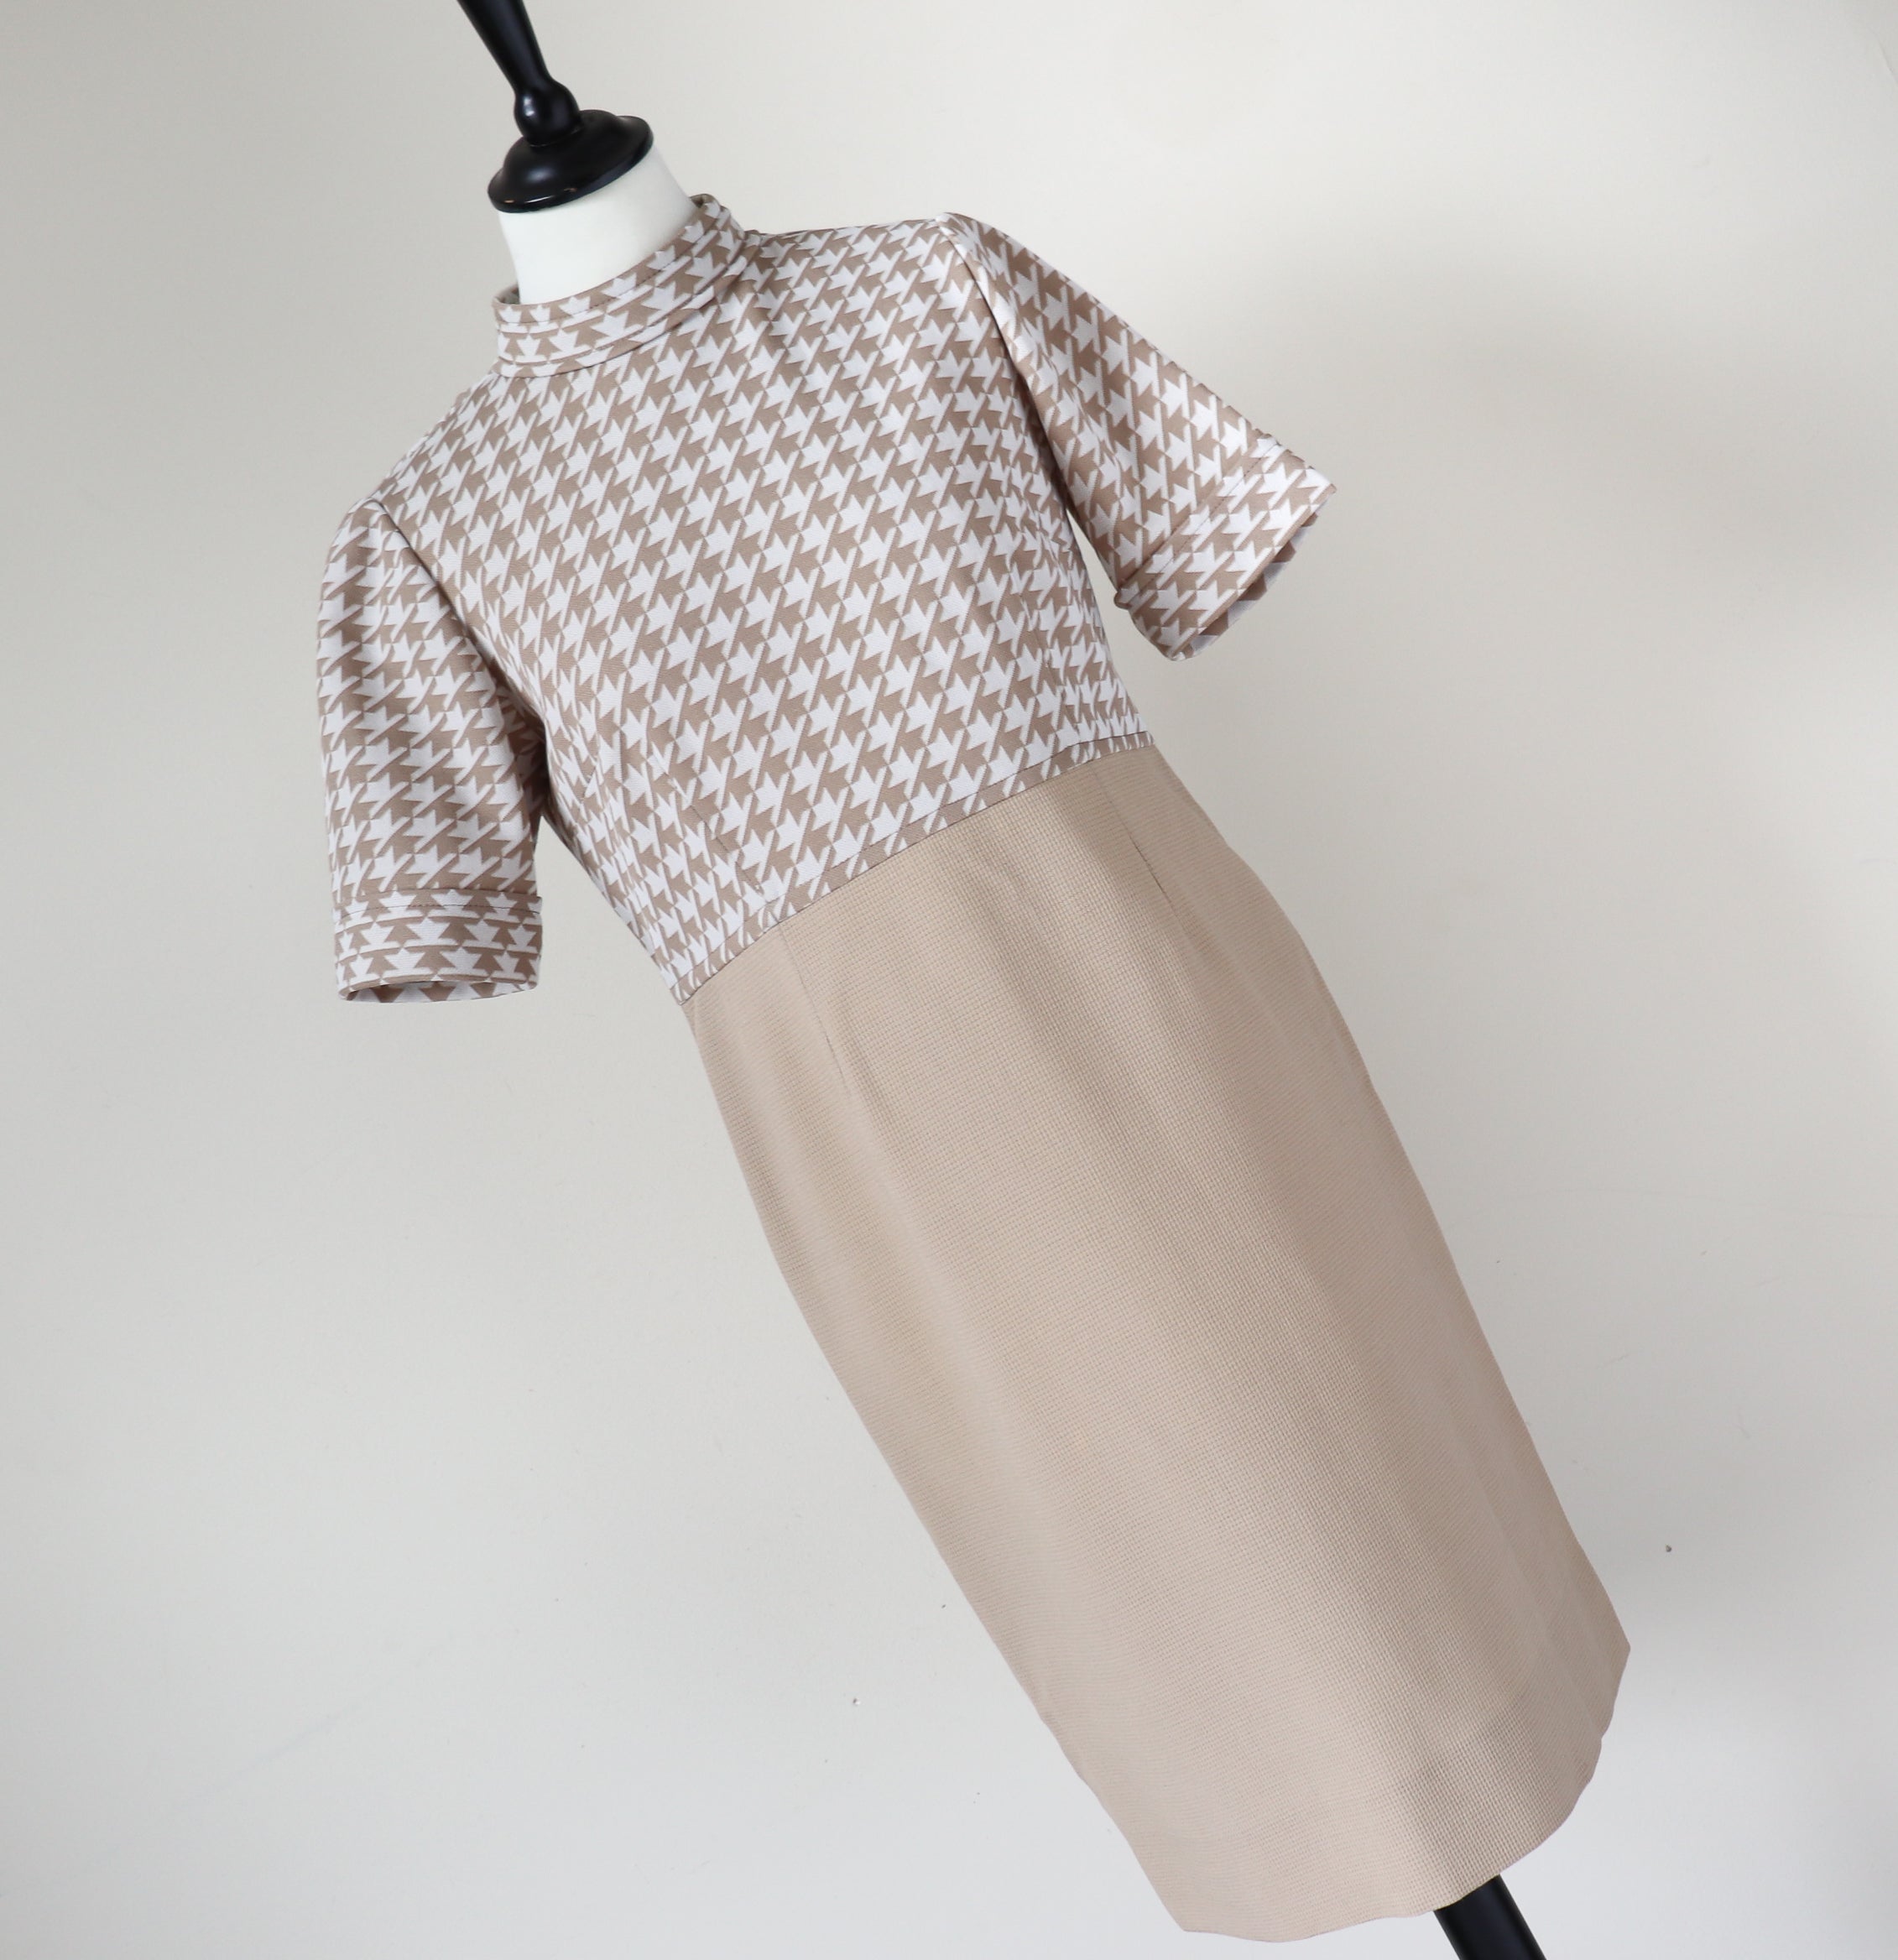 1960s Vintage Shift Dress - Cream / Beige Houndstooth Check - Empire Waist -  M / UK 12